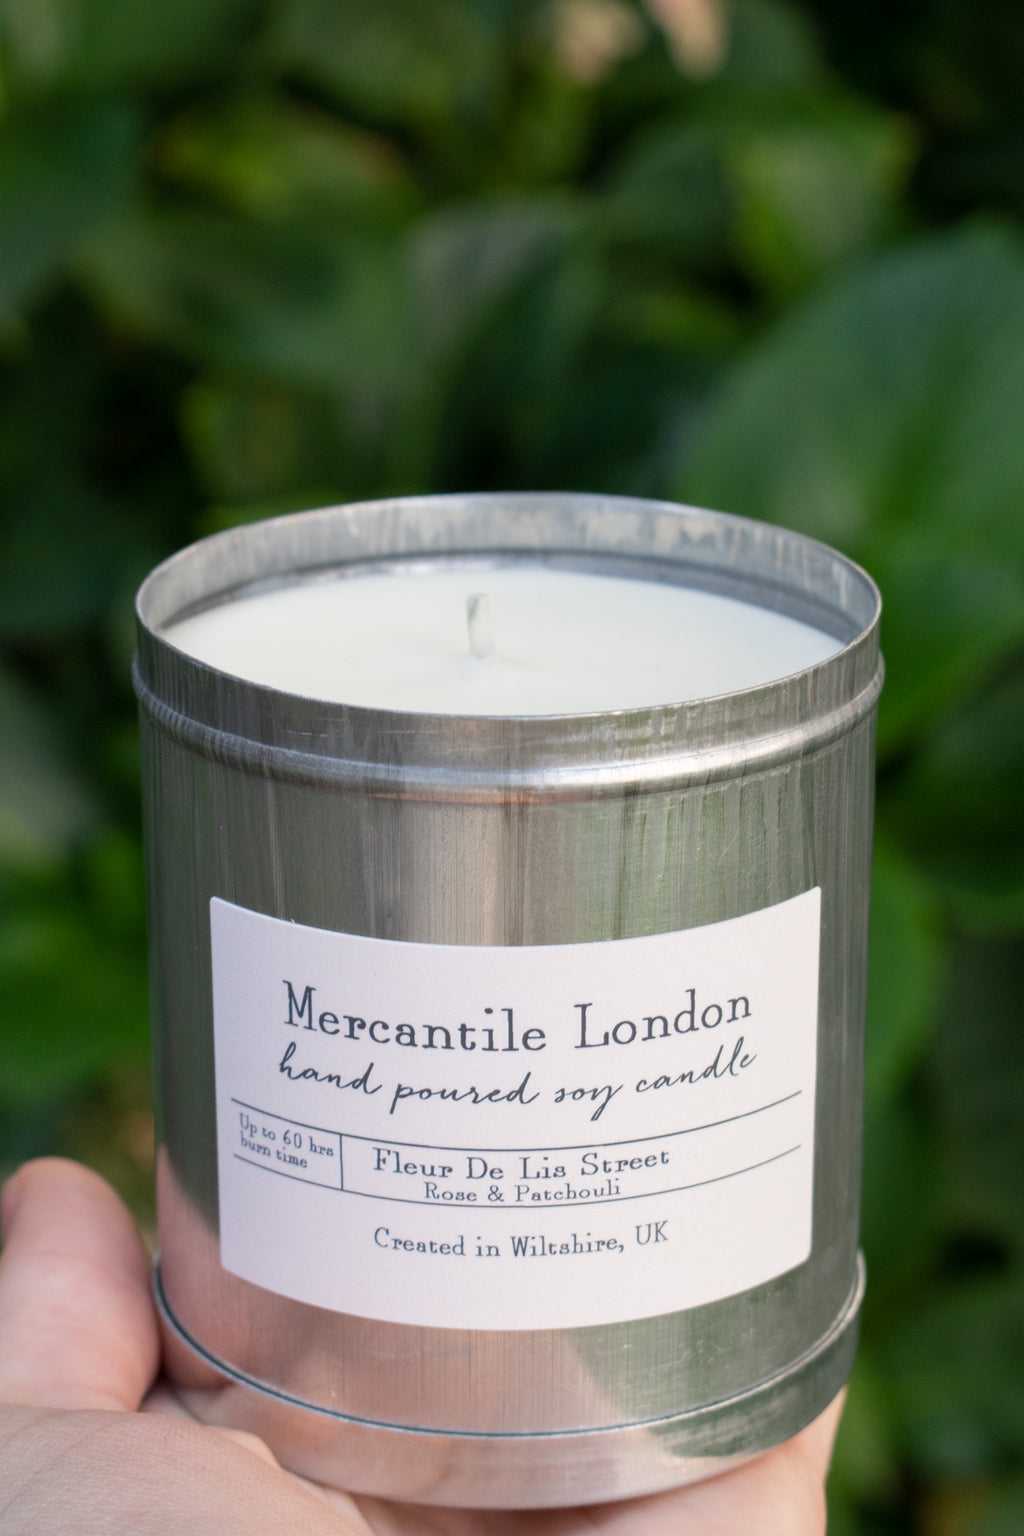 Mercantile London Fleur De Lis Street Rose And Patchouli Tin Candle - The Mercantile London